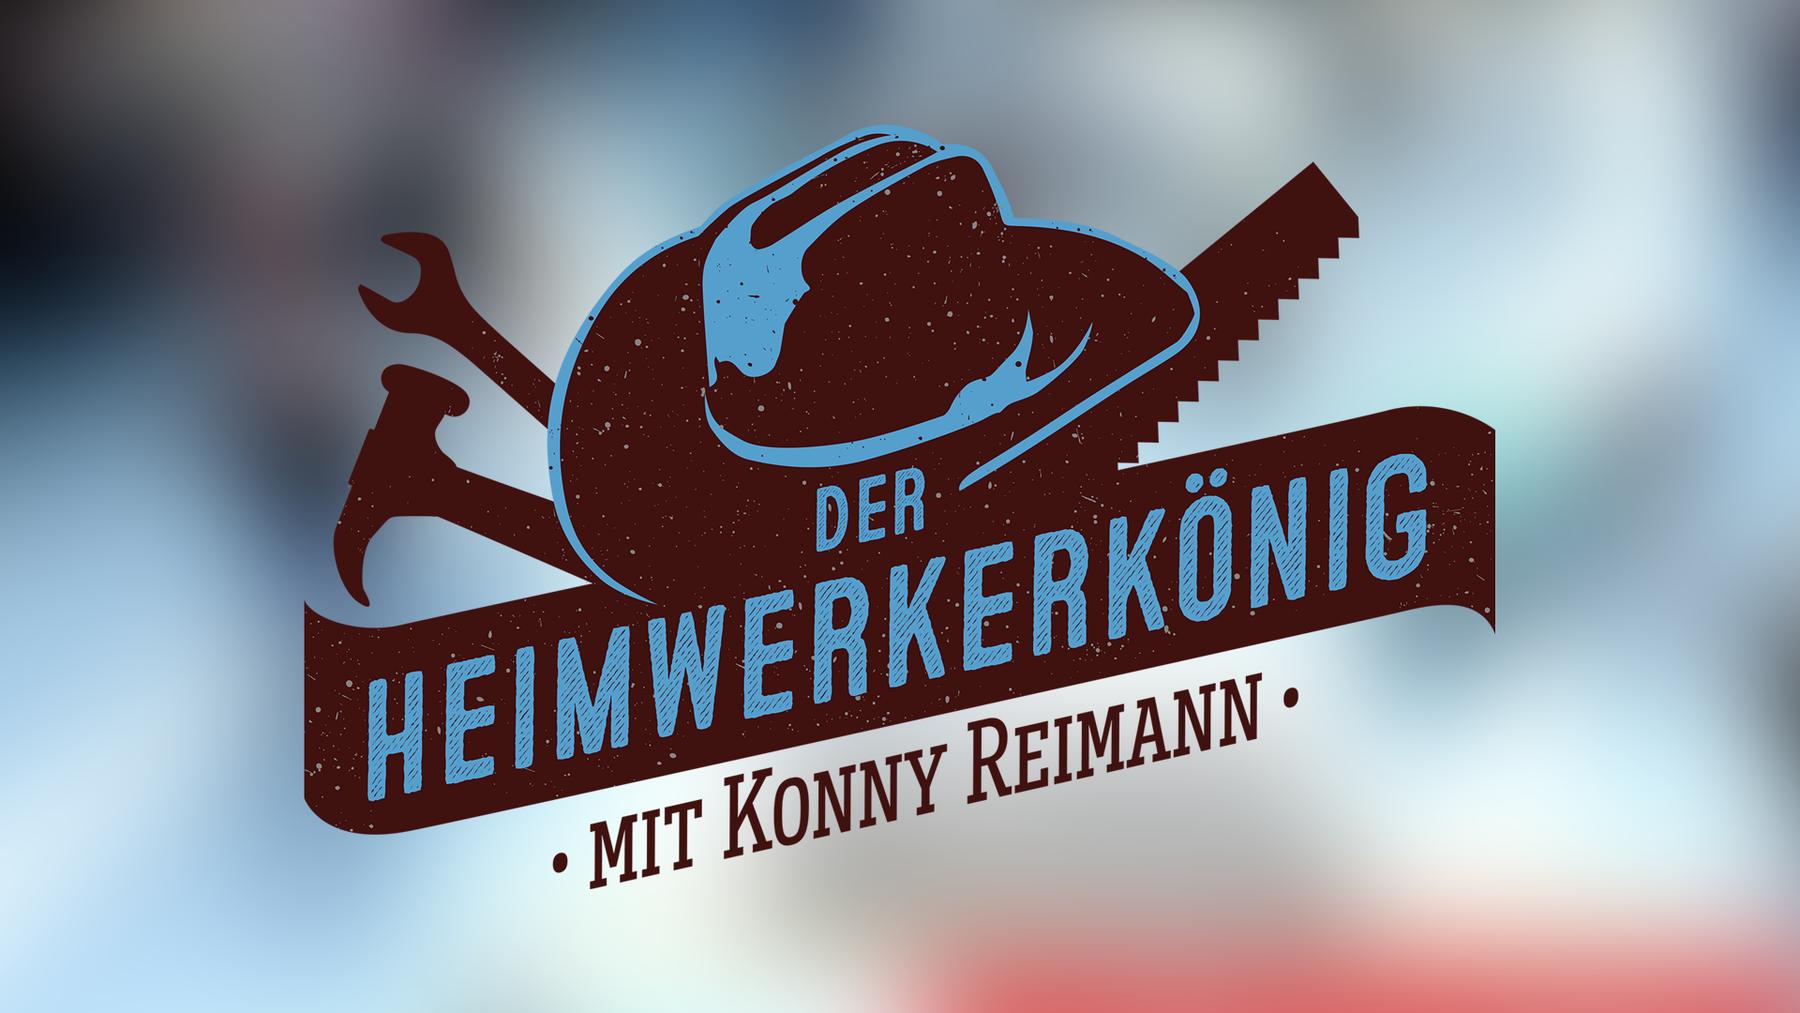 Der Heimwerkerkönig - Mit Konny Reimann